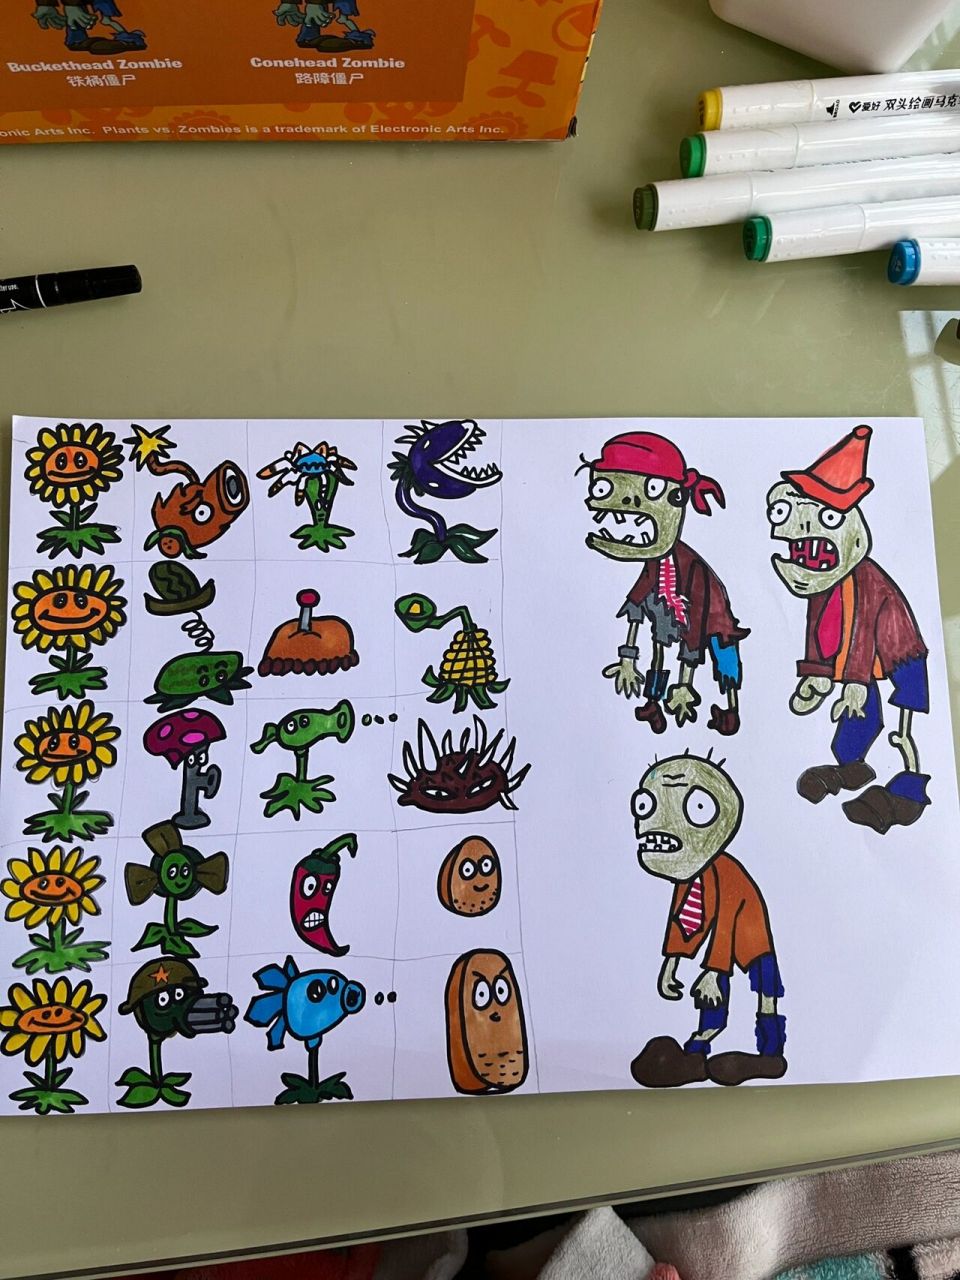 植物大战僵尸简笔画 周末在家陪孩子,娃特别喜欢植物大战僵尸,我就依